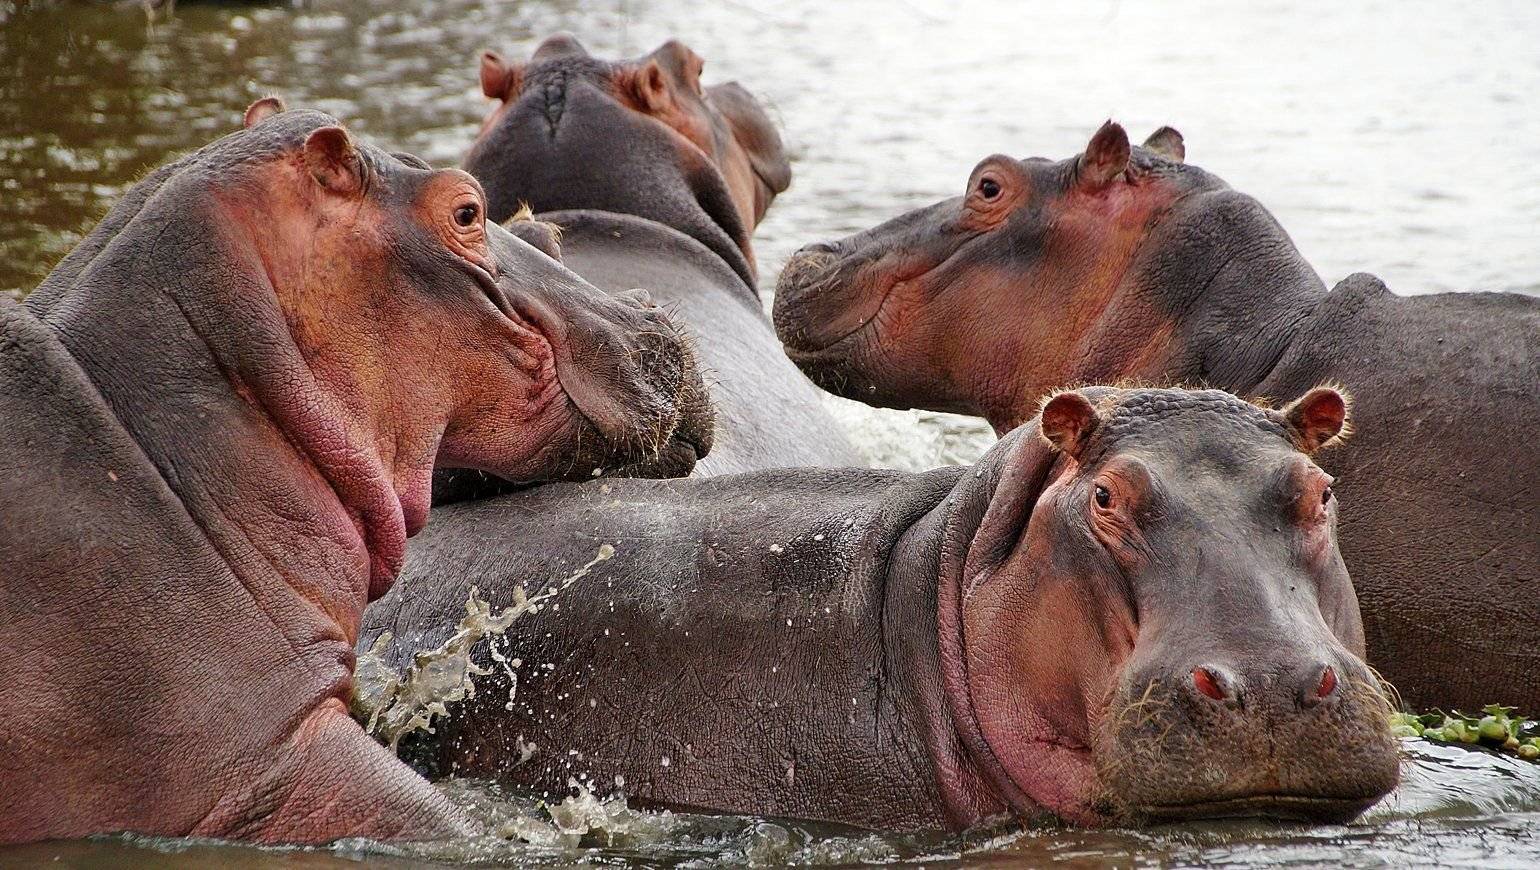 Les Hippopotames et les crocodiles de Tsavo ouest